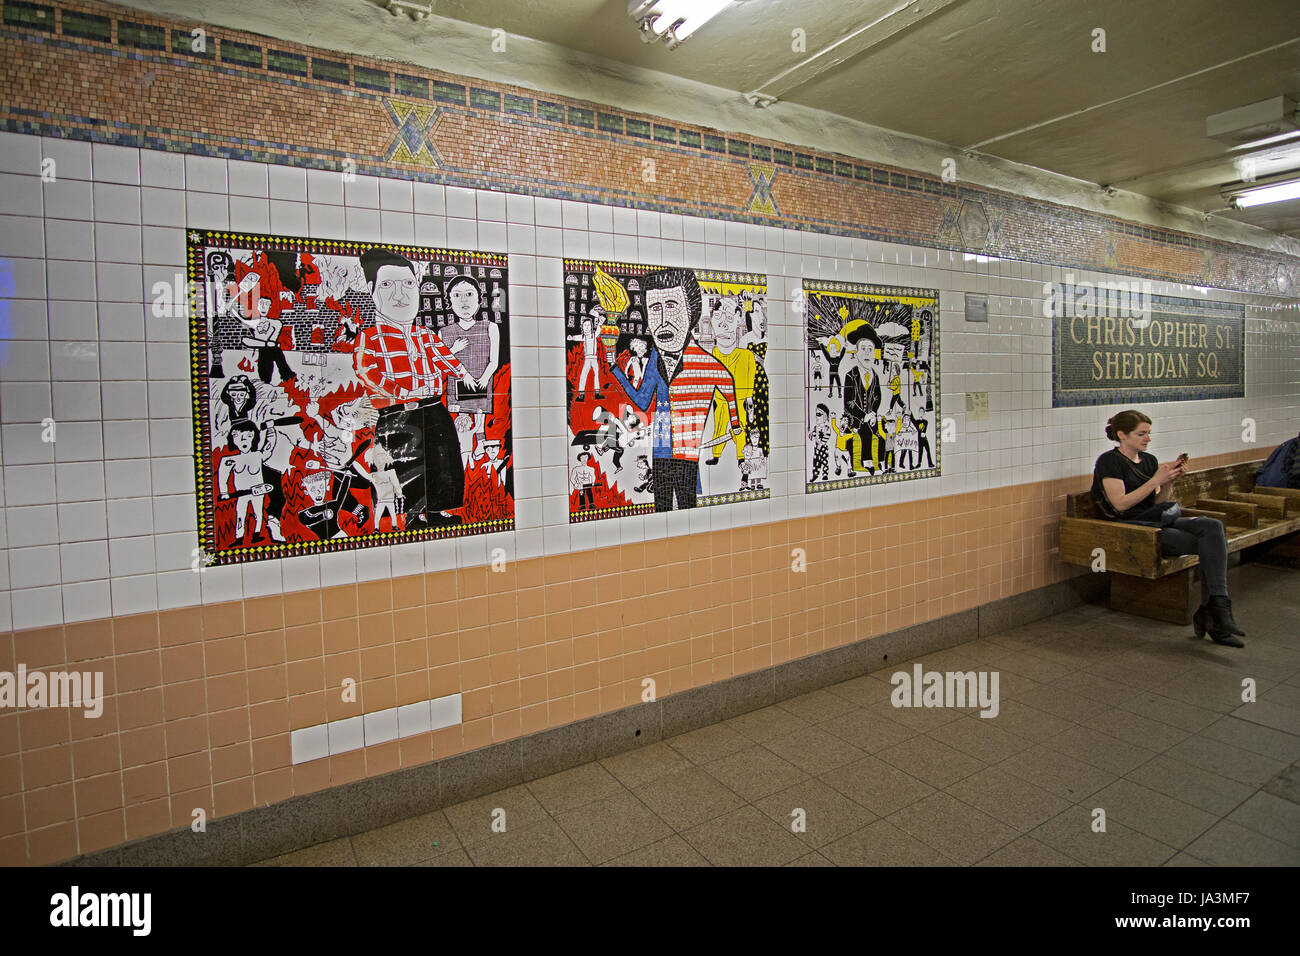 L'art du métro sur la plate-forme de la Christopher St. Sheridan Square subway station sur la ligne n°1 à Manhattan, New York City. Banque D'Images